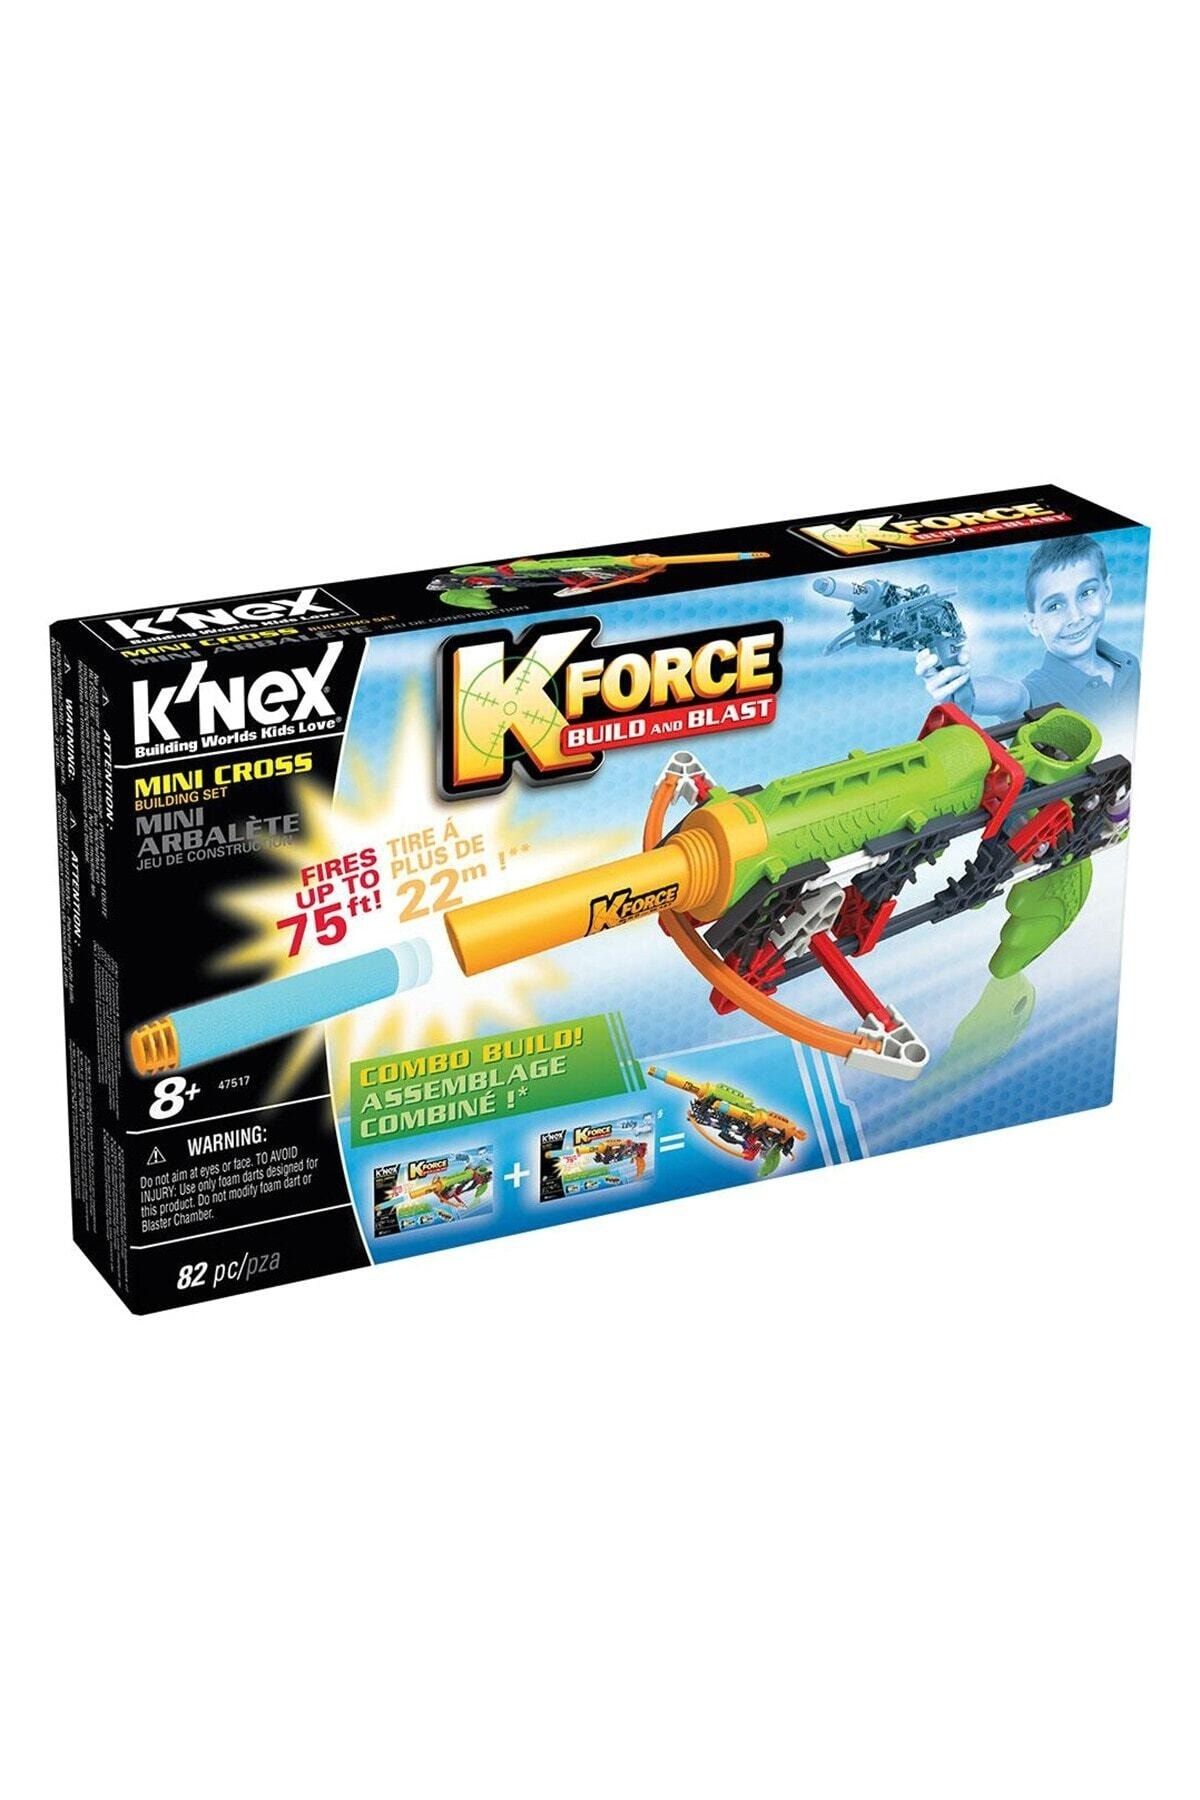 Knex Kforce Build And Blast /